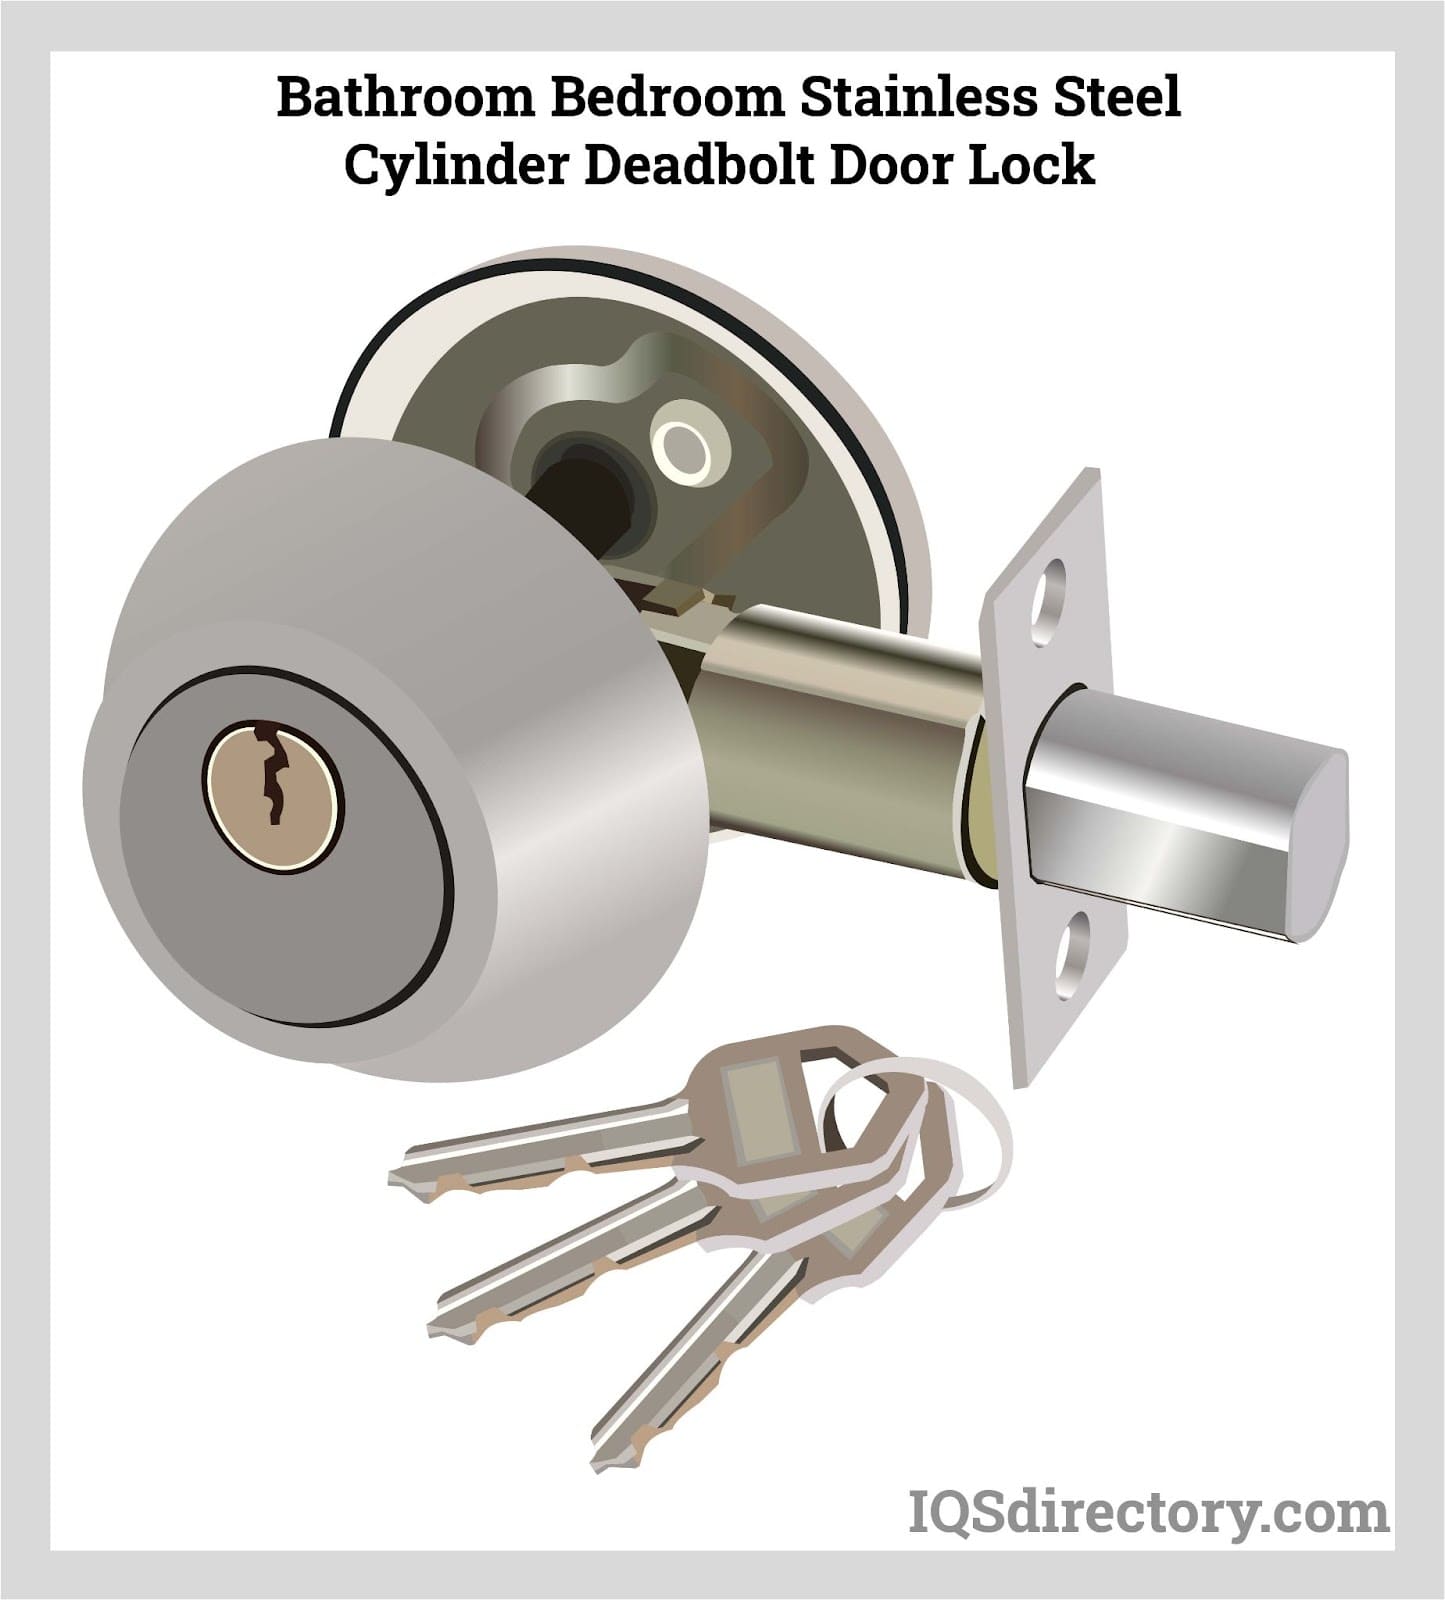 Bathroom Bedroom Stainless Steel Cylinder Deadbolt Door Lock